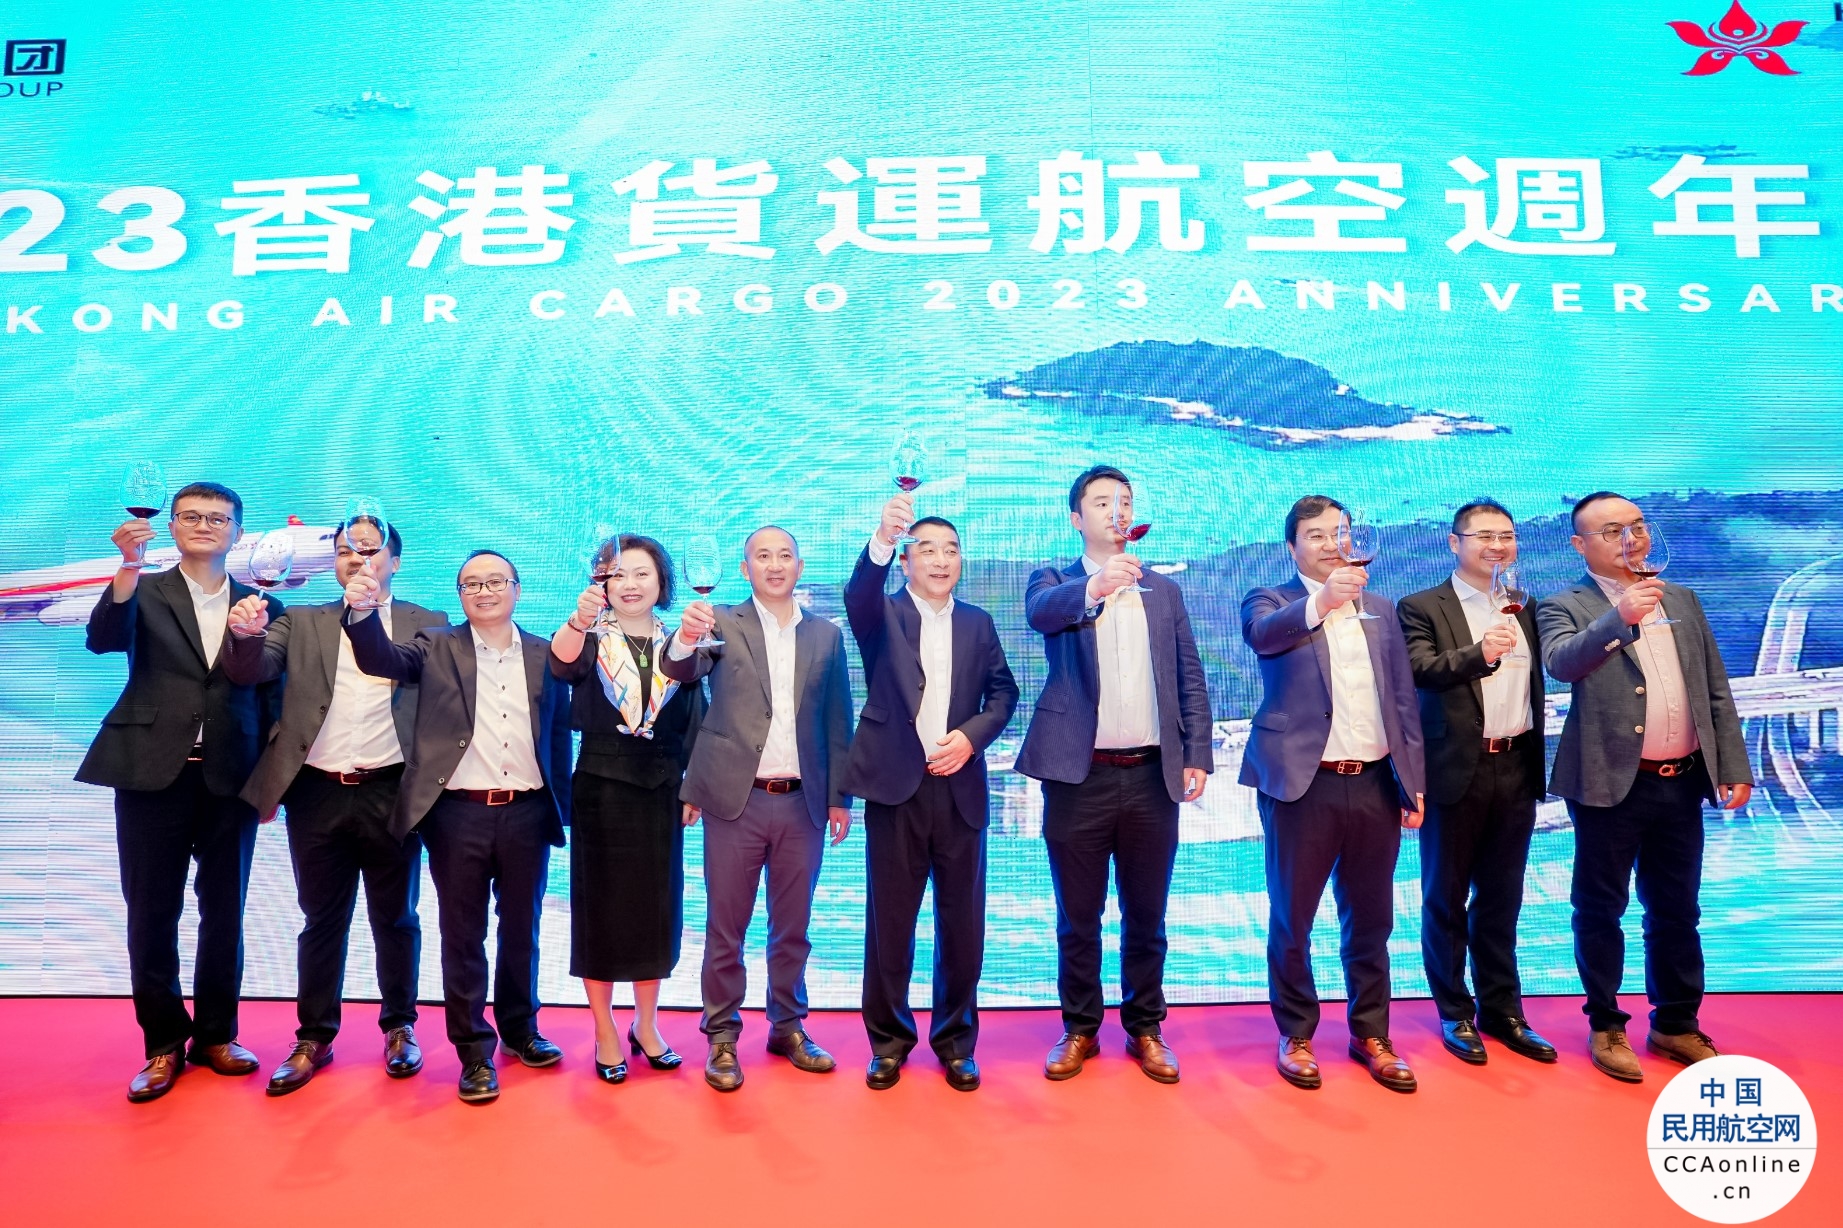 新海航两周年丨香港货航感谢全球货运代理 携手共创未来